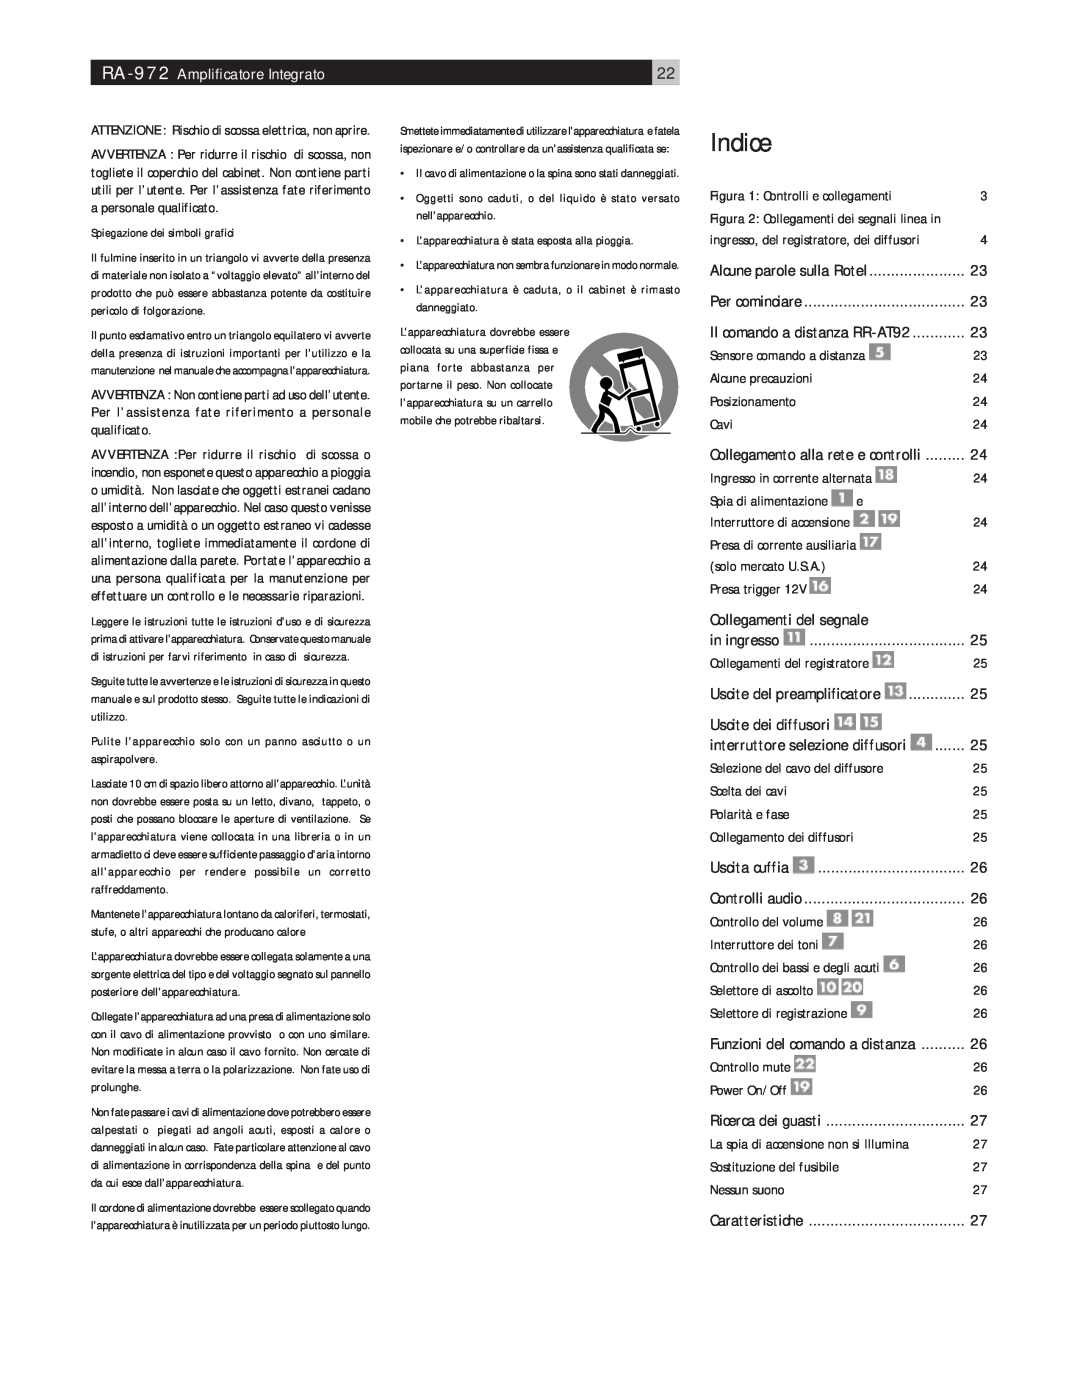 Rotel RA-972 owner manual Indice, Collegamenti del segnale 